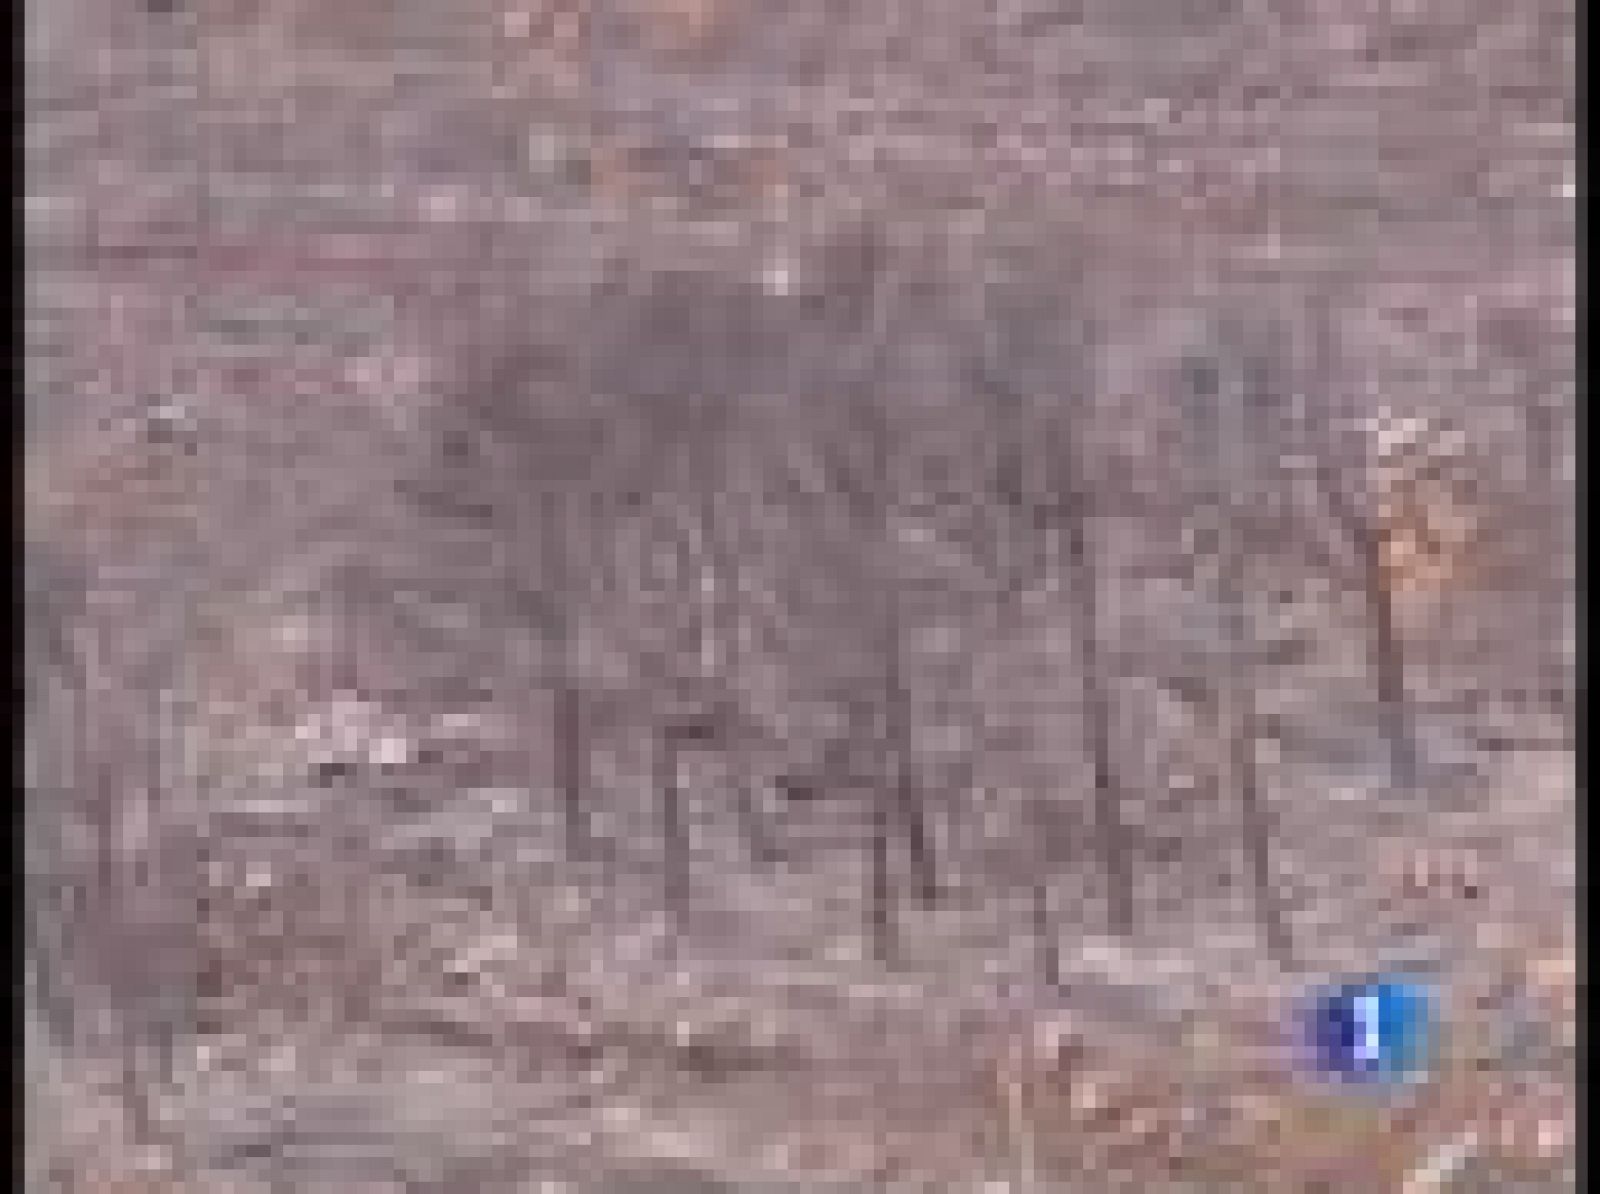 Las llamas han arrasado ya más de 1.000 hectáreas de pino joven y han entrado en Navarra. El fuerte viento que sopla en la zona está dificultando las tareas de extinción.